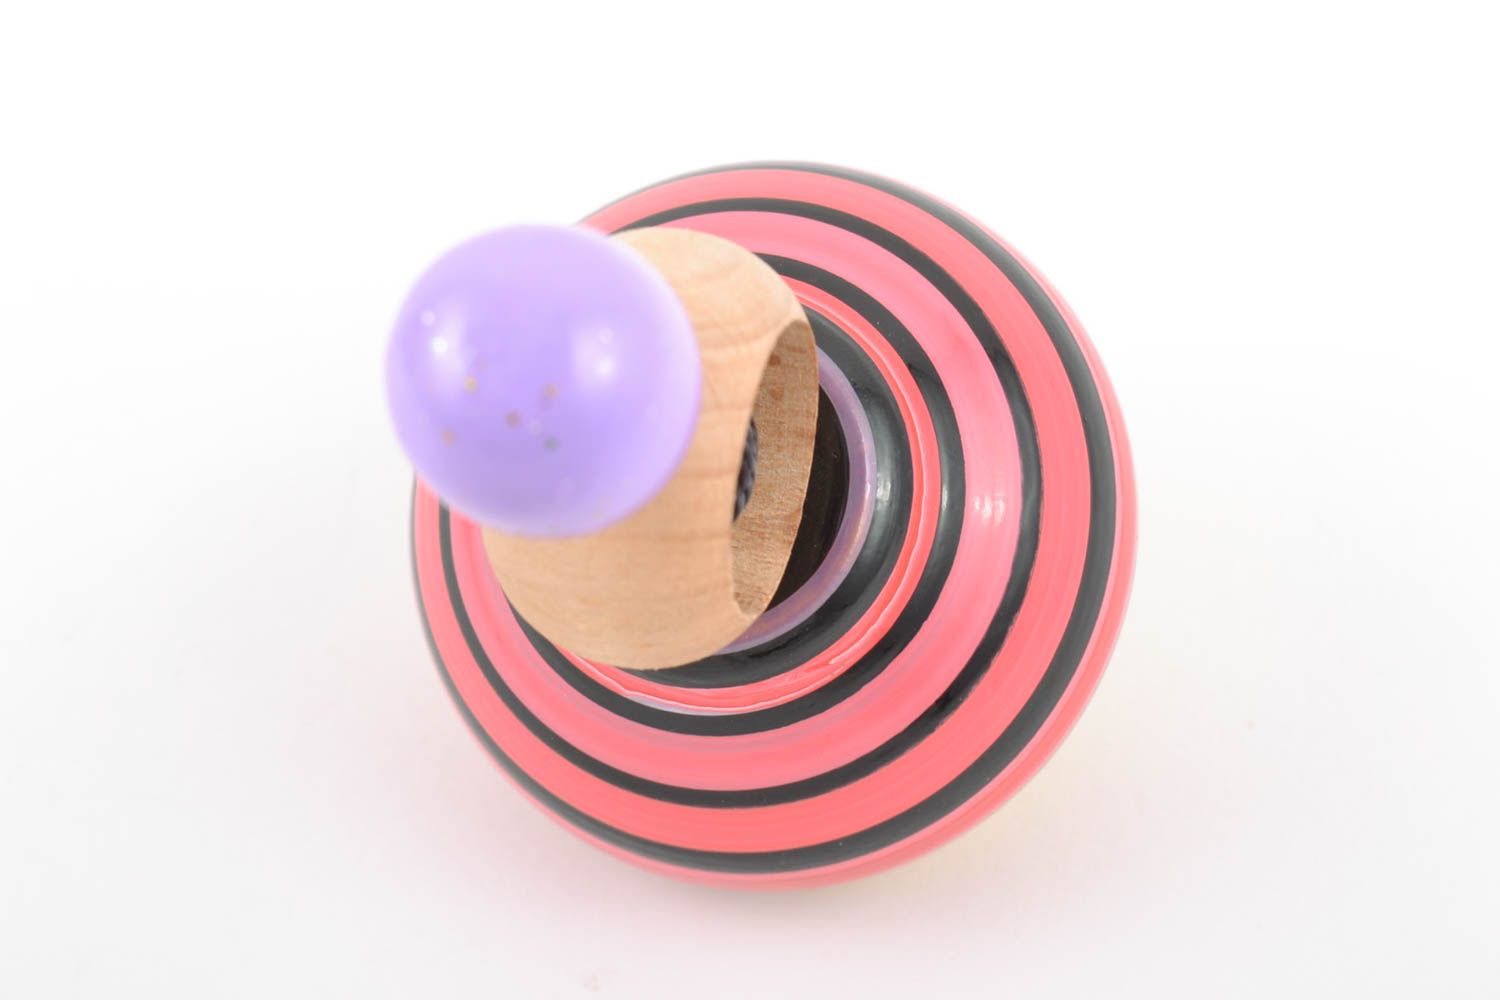 Развивающая игрушка юла из древесины яркая полосатая маленькая ручной работы  фото 3